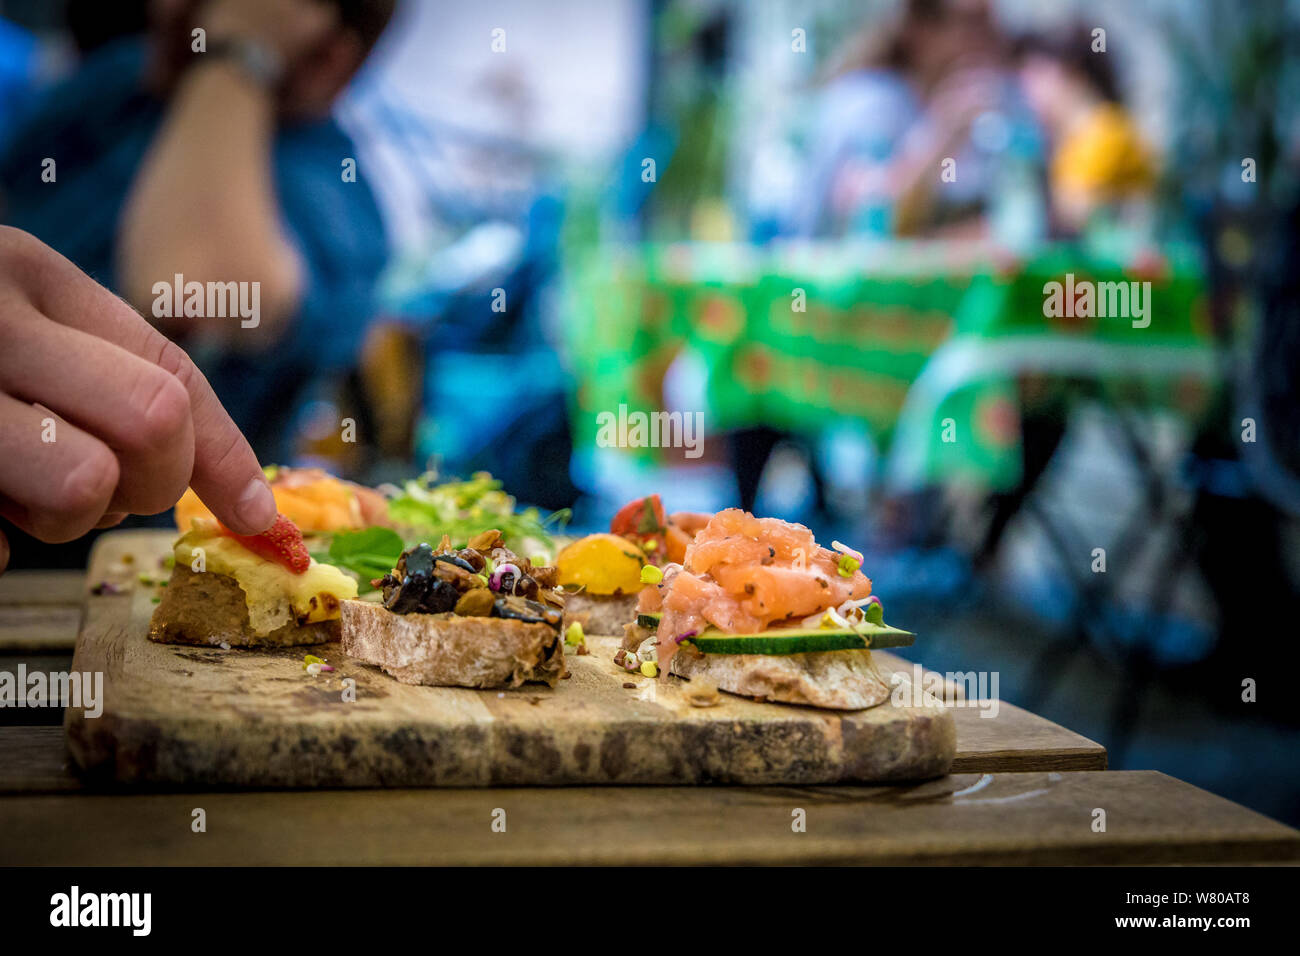 Bruschettas on wooden plate Stock Photo